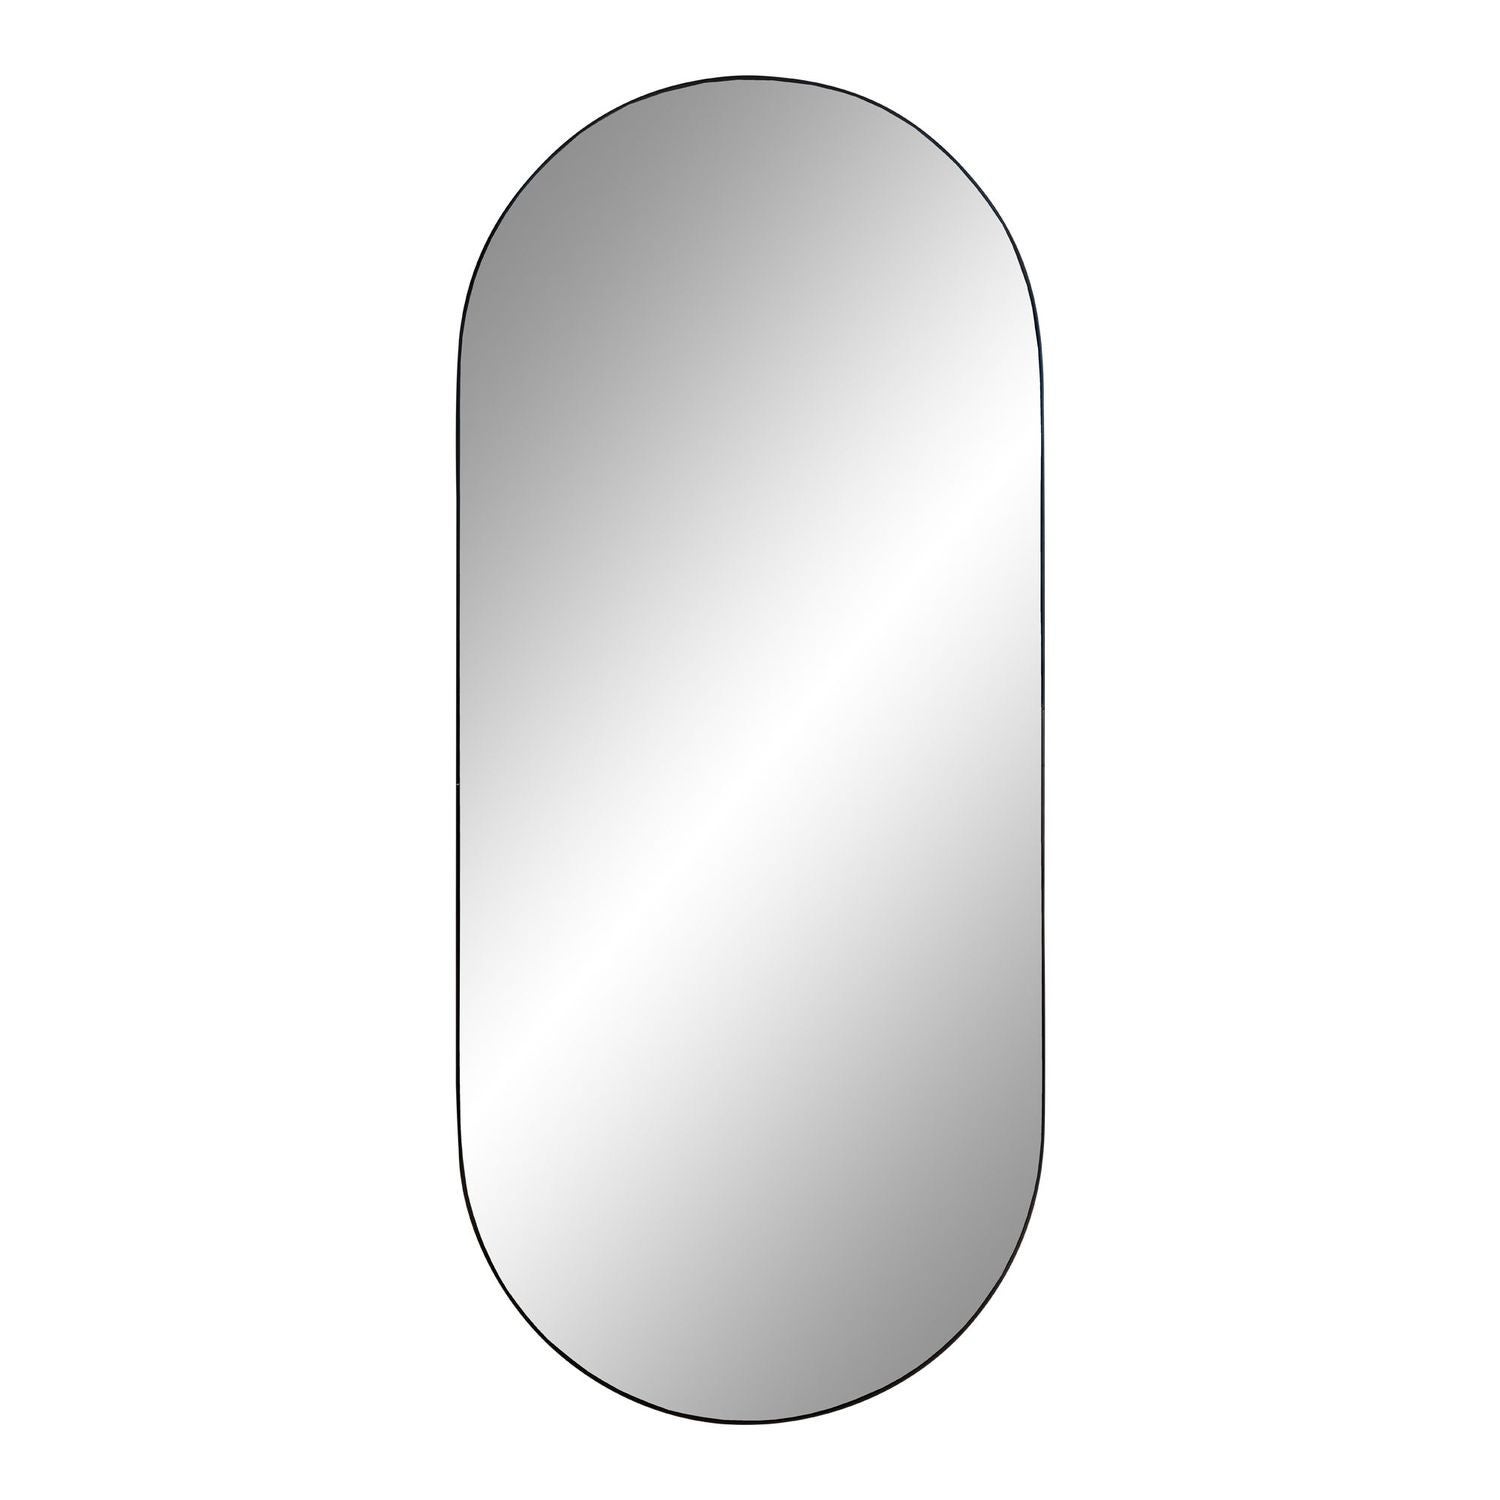 Specchio a forma ovale irregolare Mimo 80x170, Schuller